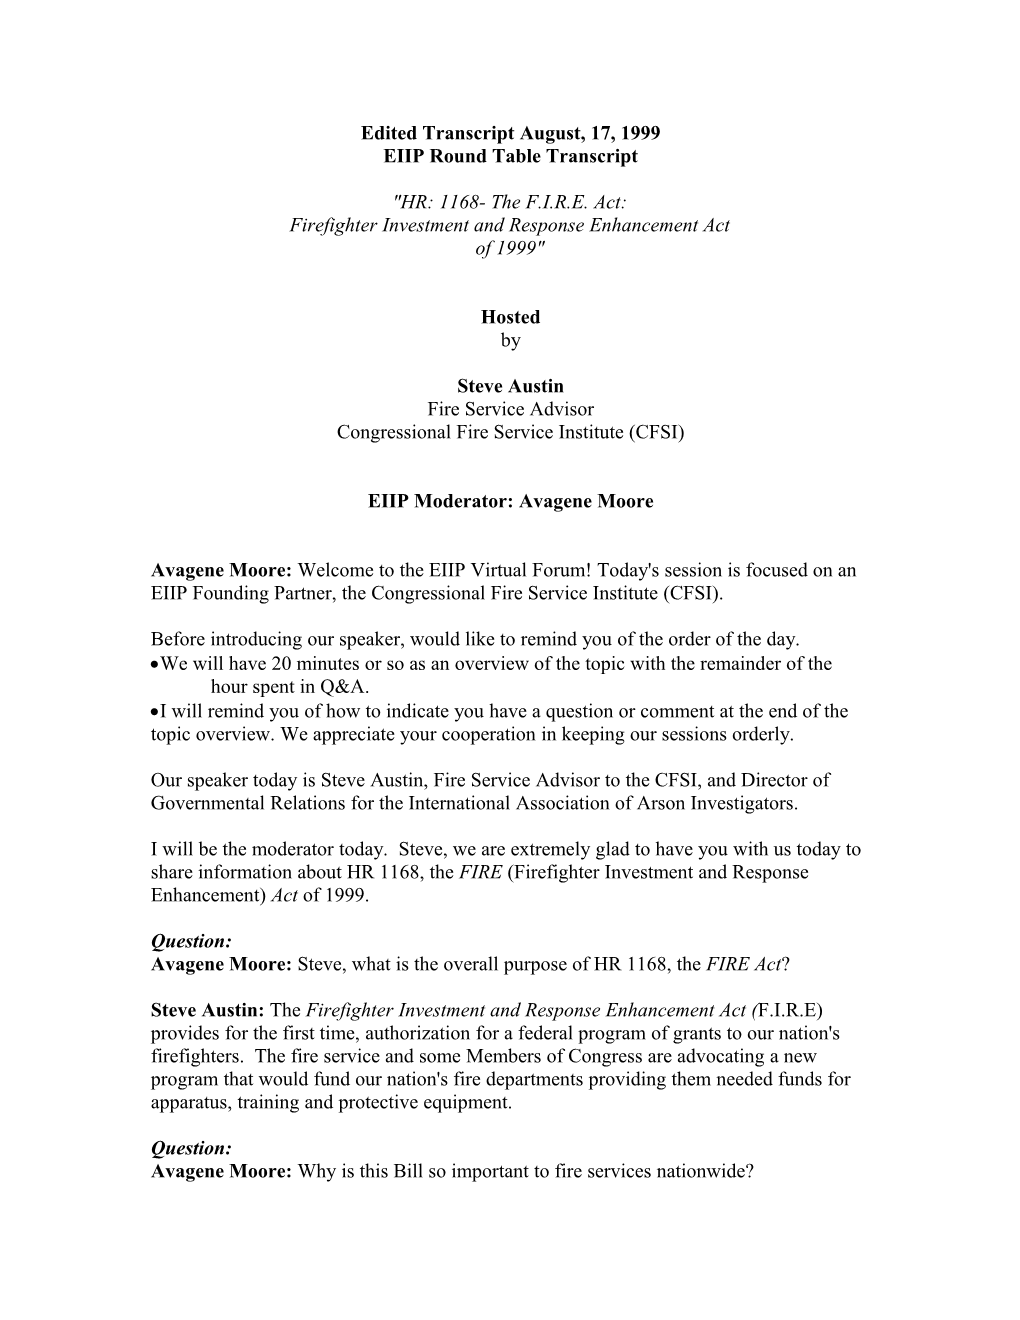 EIIP Round Table Transcript